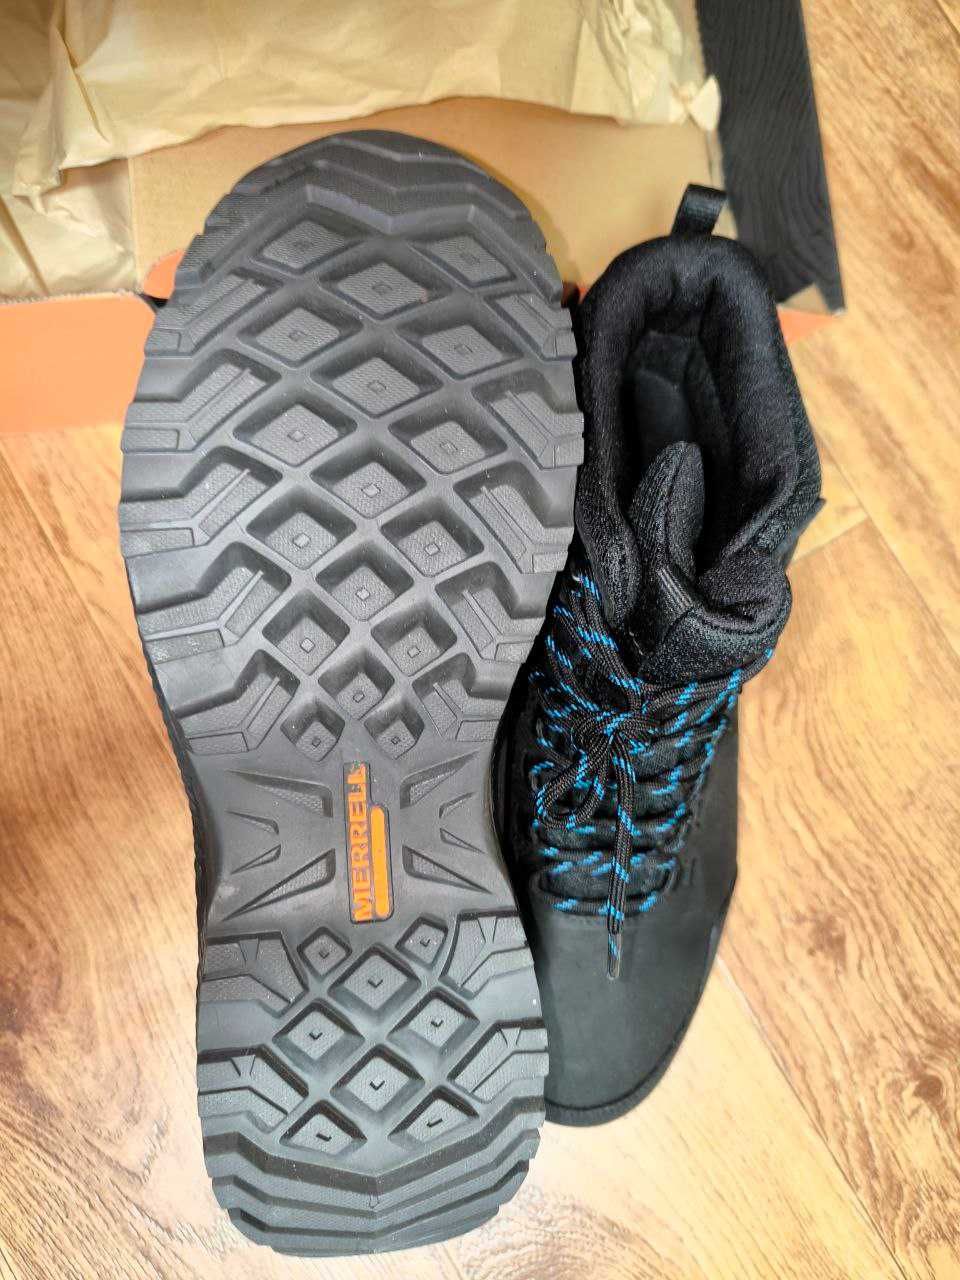 Зимние ботинки MERRELL Waterproof в КОРОБКЕ. В идеальном состоянии